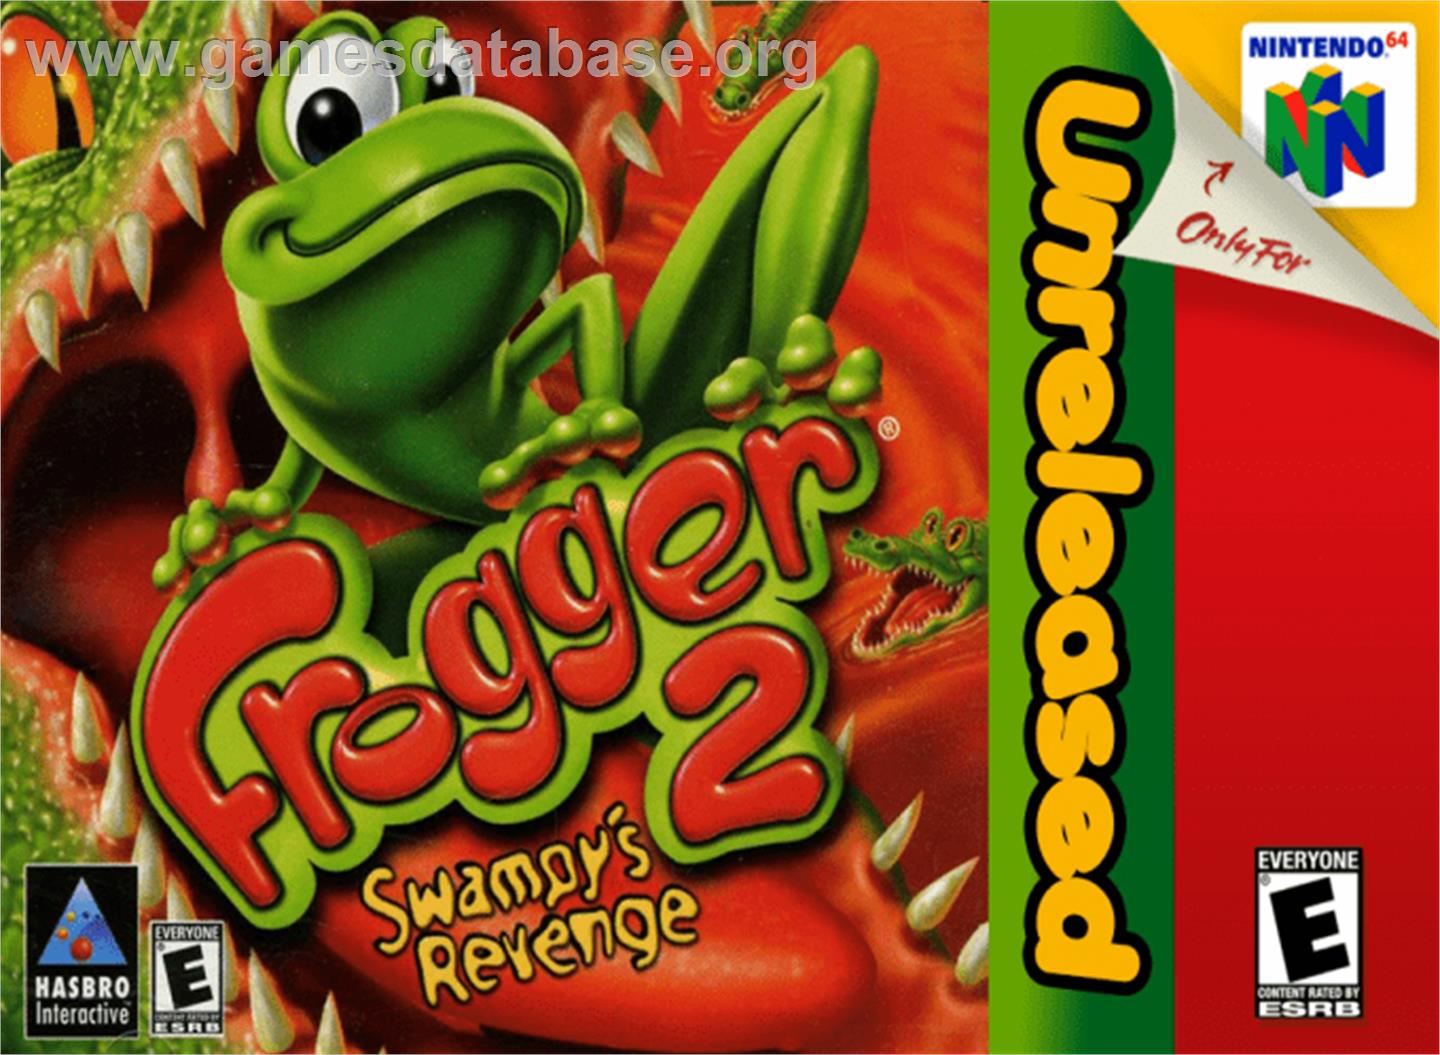 Frogger 2: Swampy's Revenge - Nintendo N64 - Artwork - Box